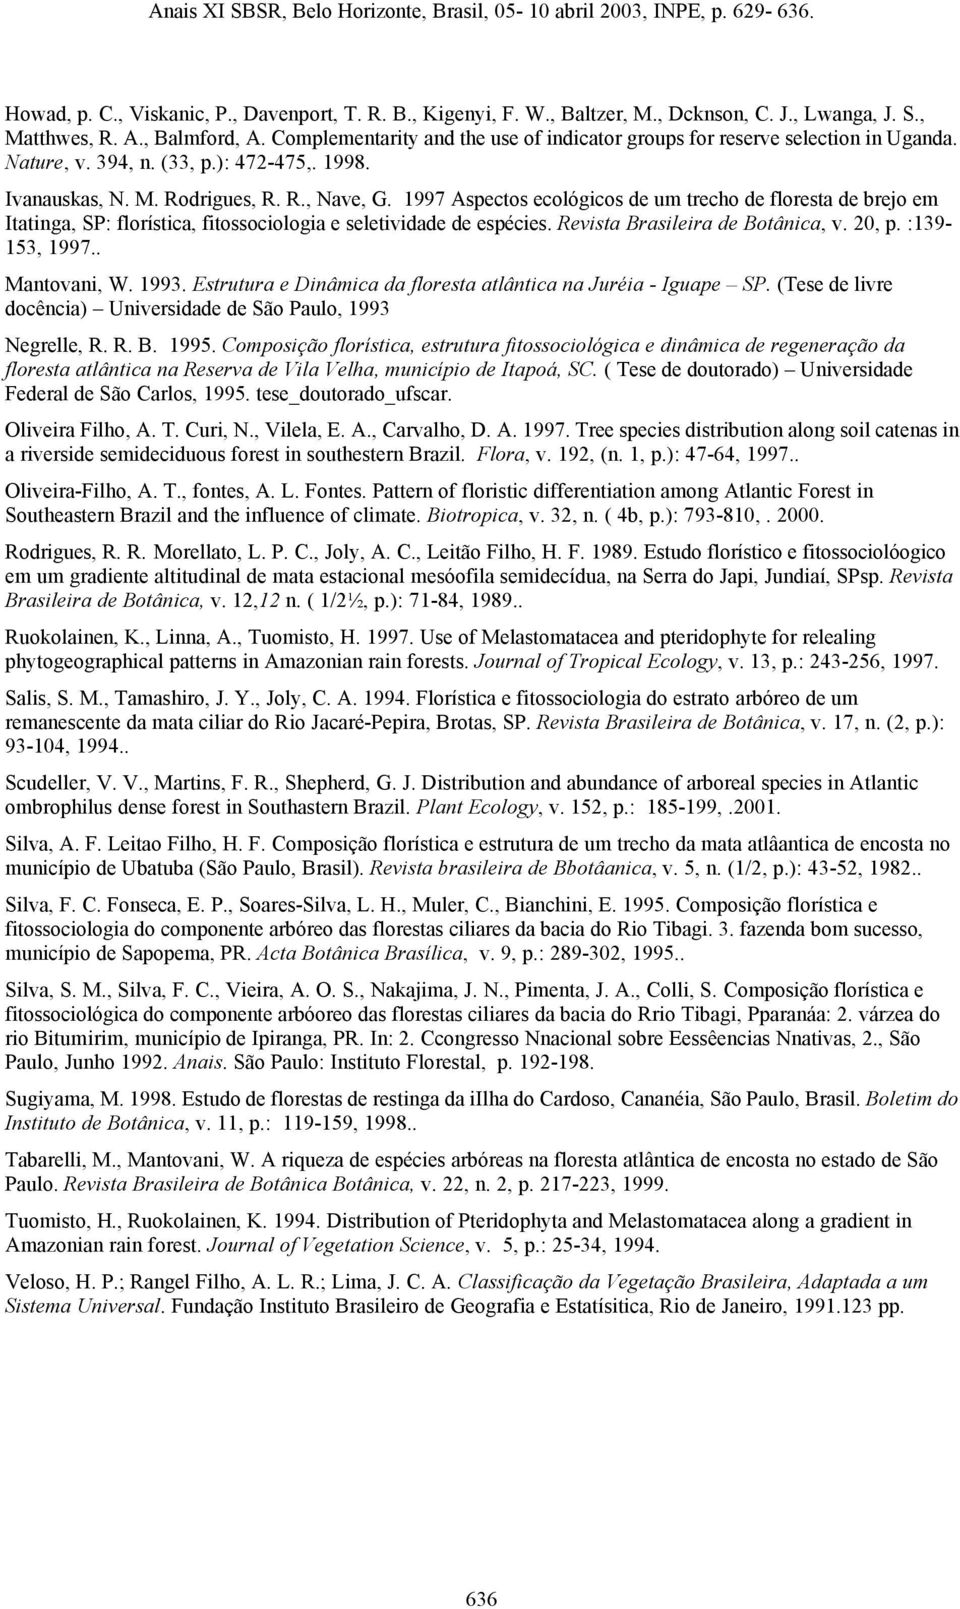 1997 Aspectos ecológicos de um trecho de floresta de brejo em Itatinga, SP: florística, fitossociologia e seletividade de espécies. Revista Brasileira de Botânica, v. 20, p. :139-153, 1997.